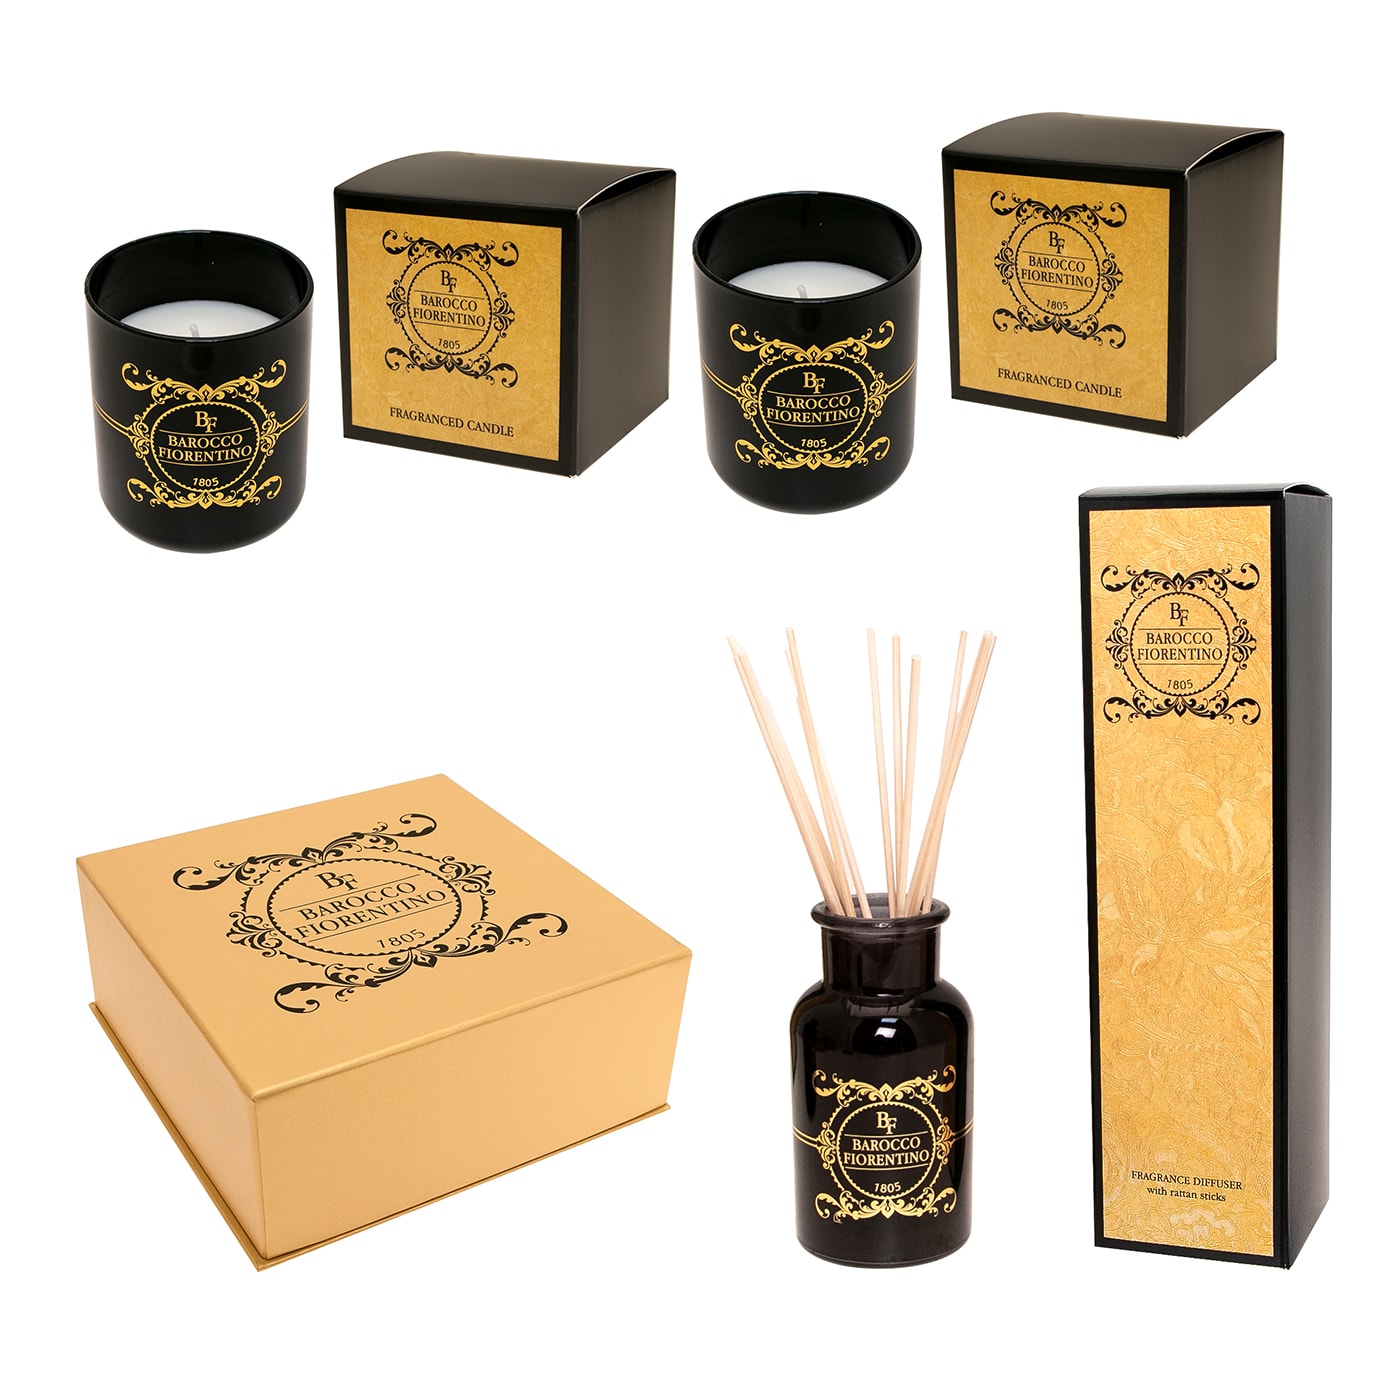 Barocco Fiorentino Set of 2 Candles and 1 Fragrance Diffuser - Cereria Graziani